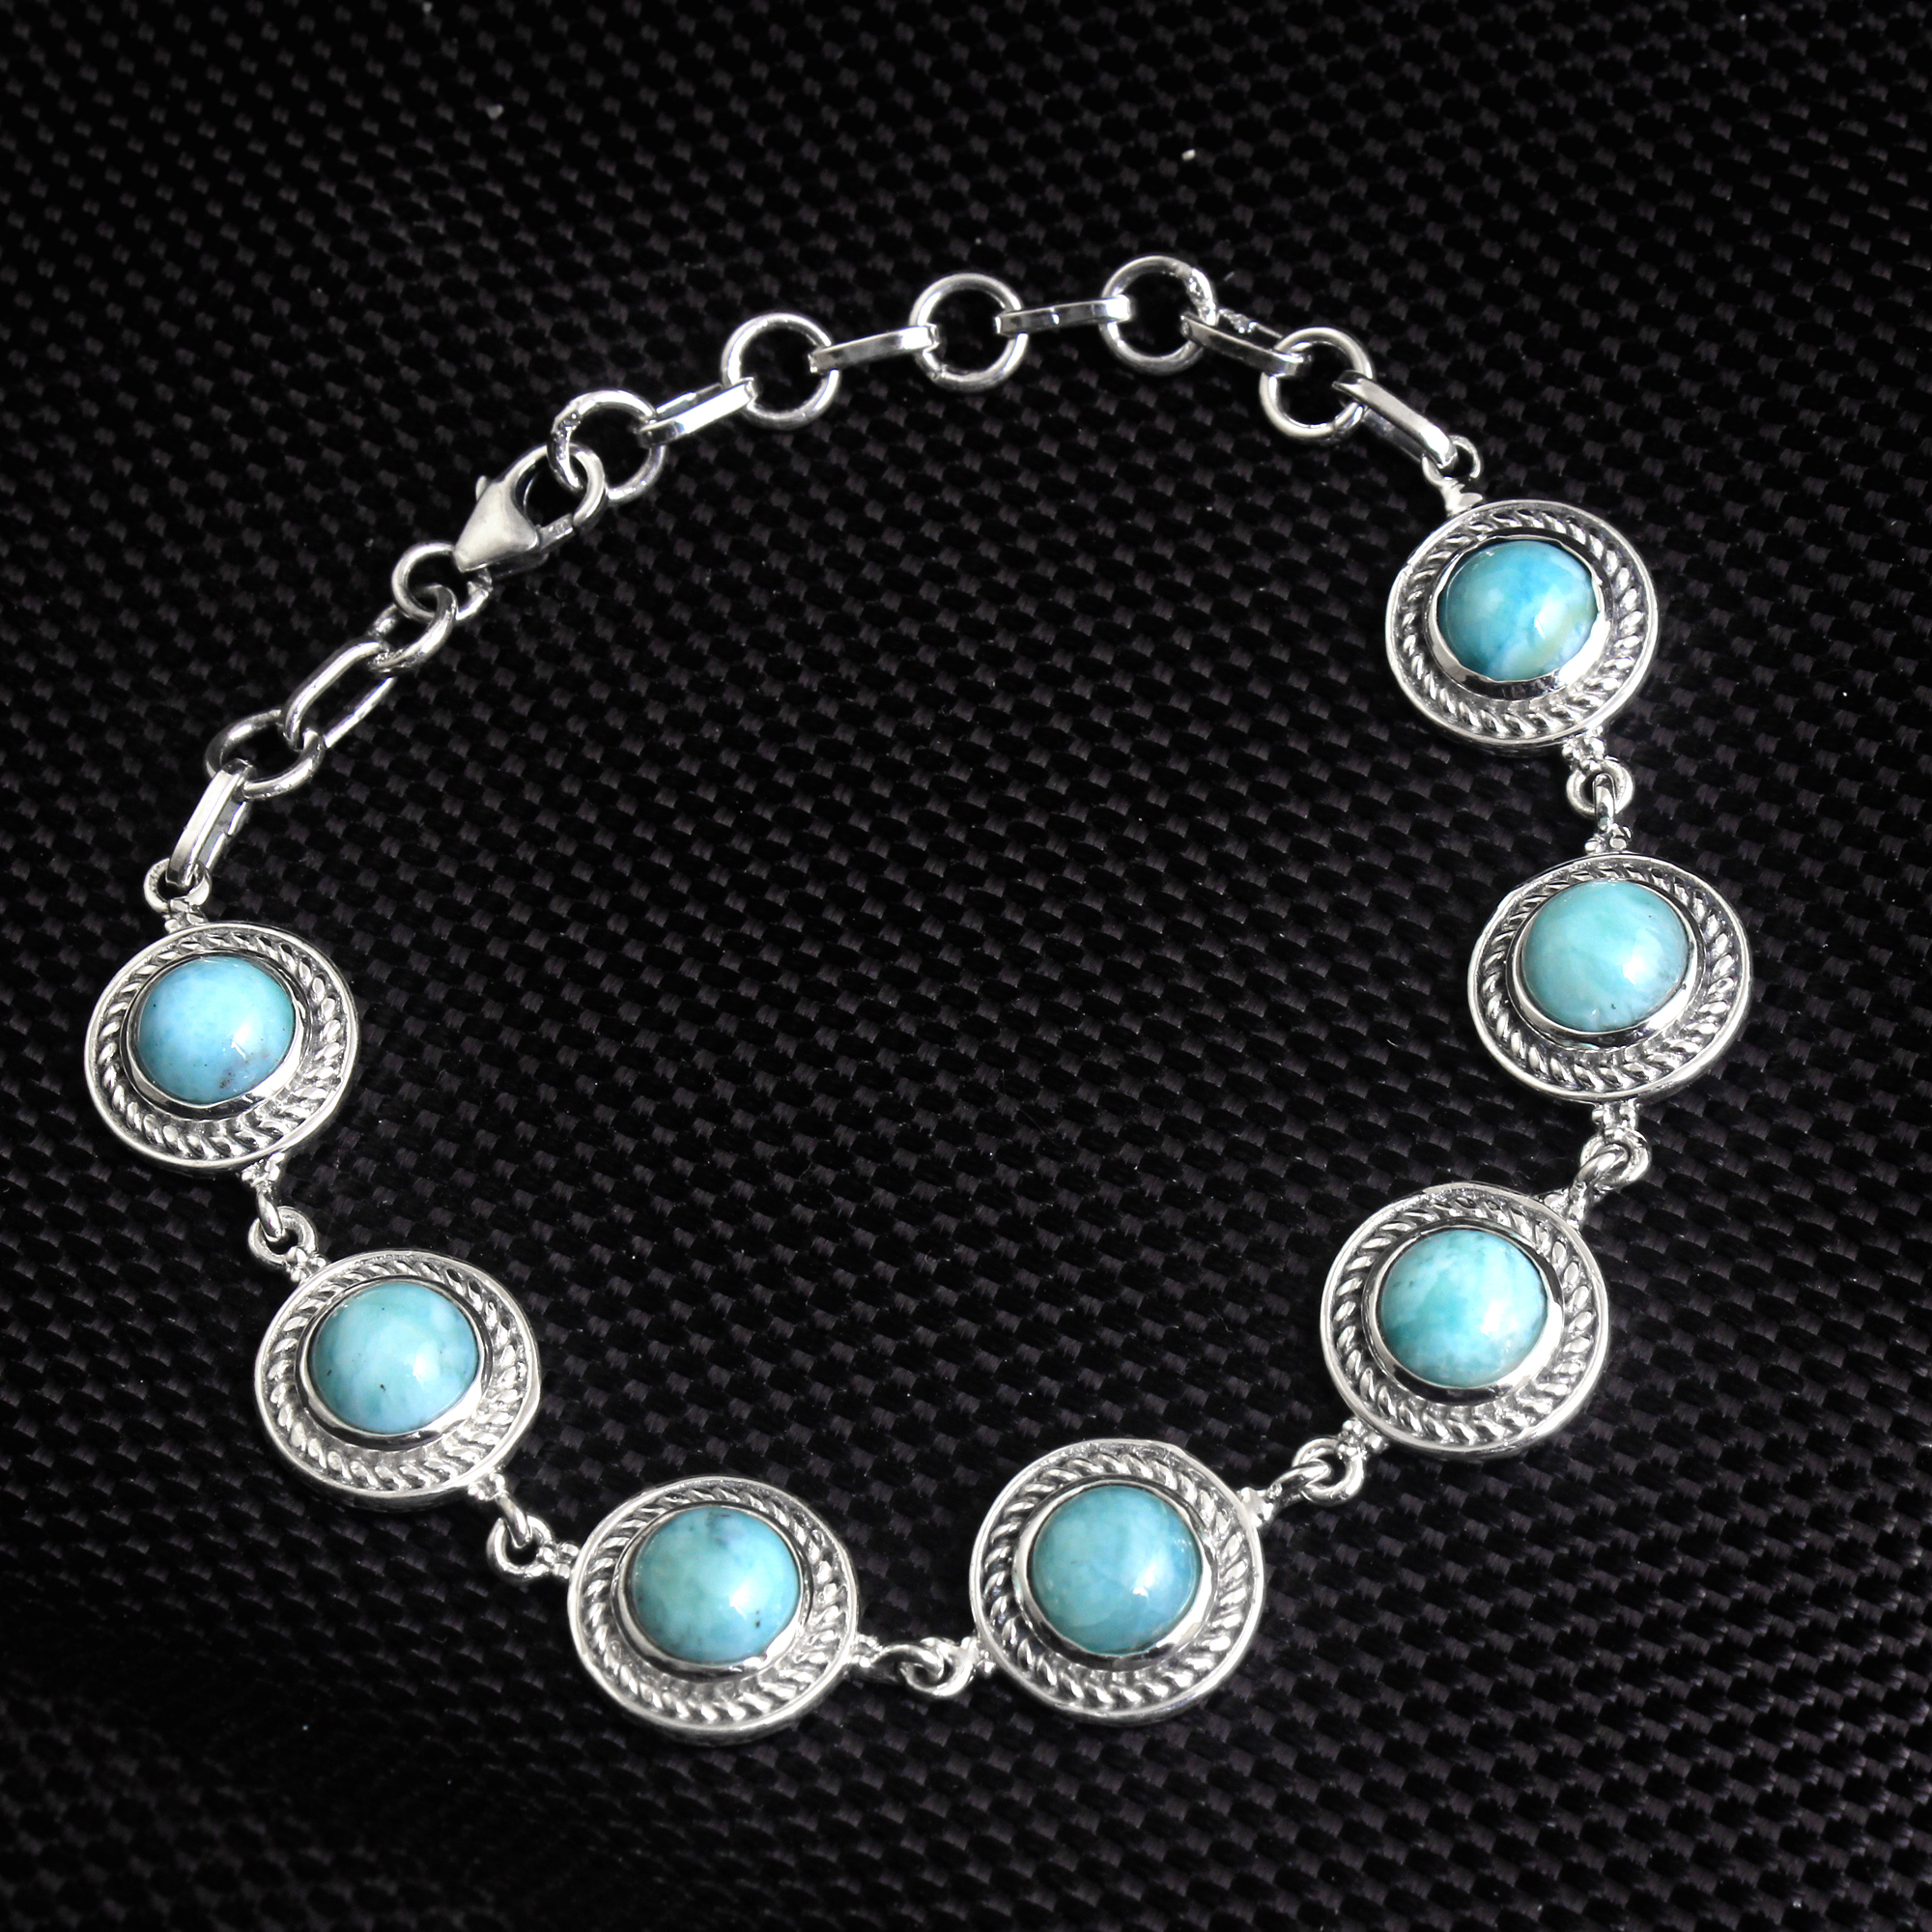 Fashion Jewelry Gift For Her Handmade Jewelry Silver Bracelet Silver Jewelry Statement Jewelry Unisex Jewelry